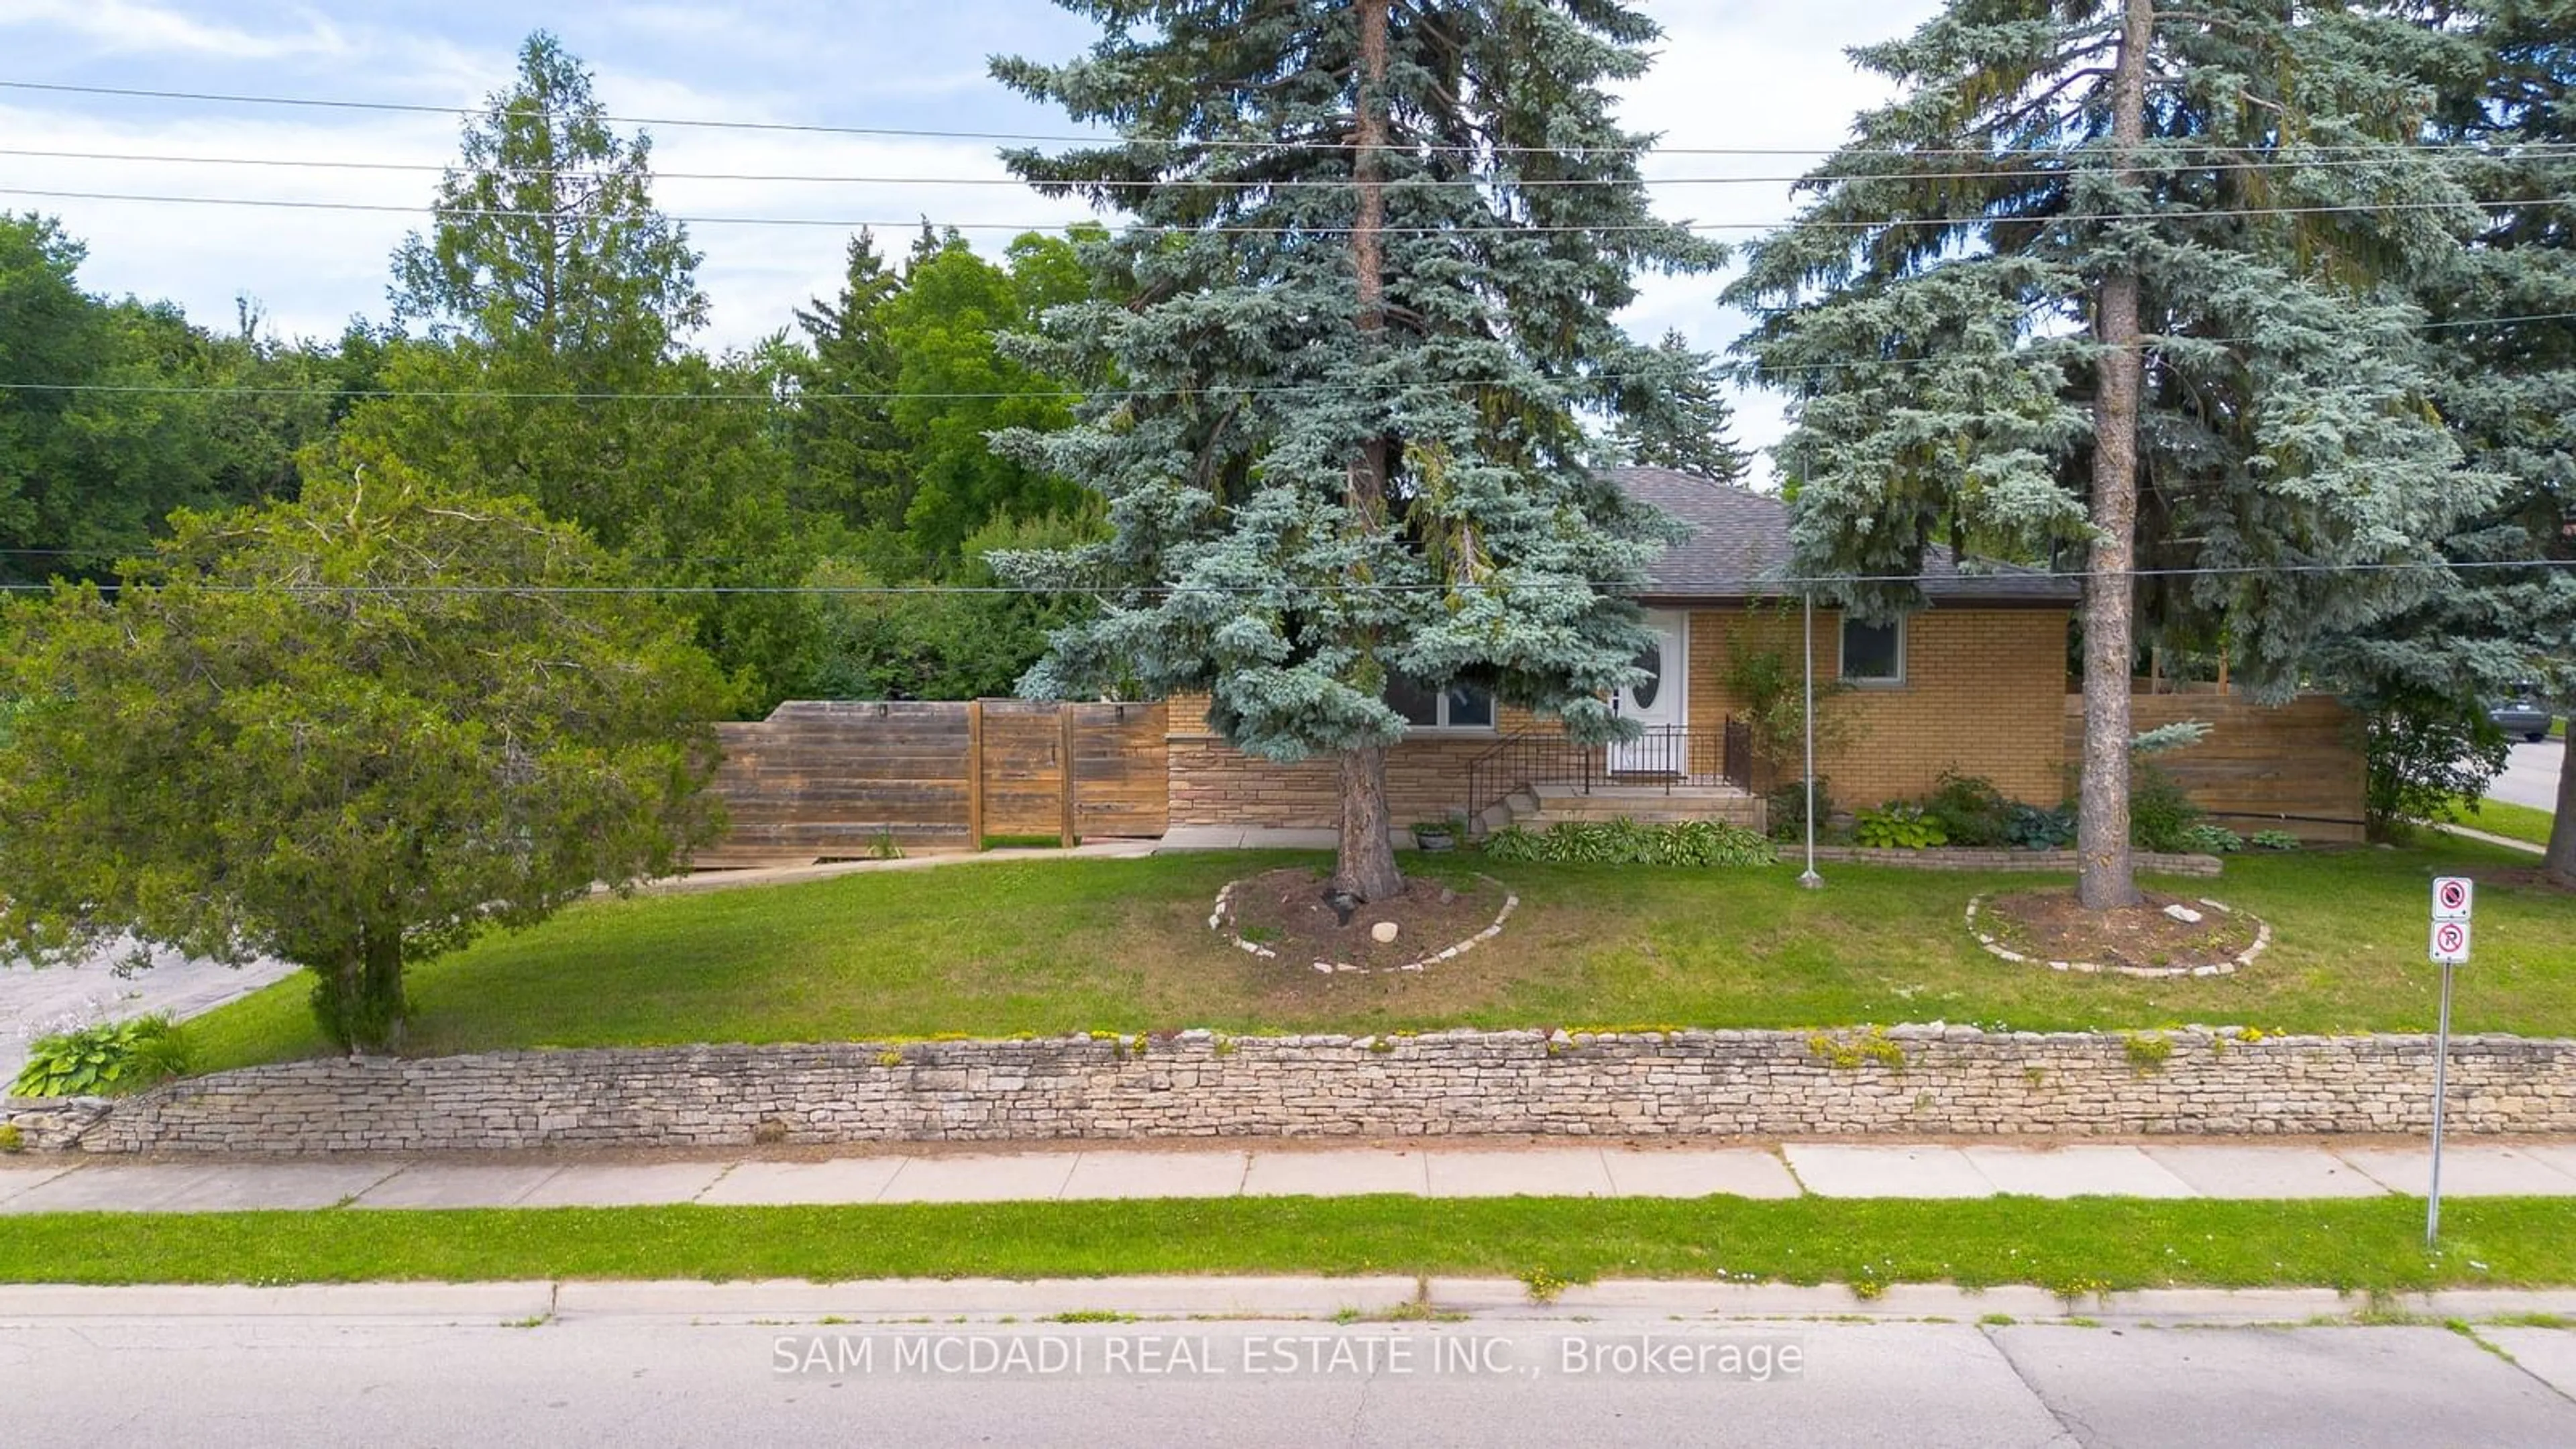 Frontside or backside of a home for 2315 Mount Forest Dr, Burlington Ontario L7P 1J4